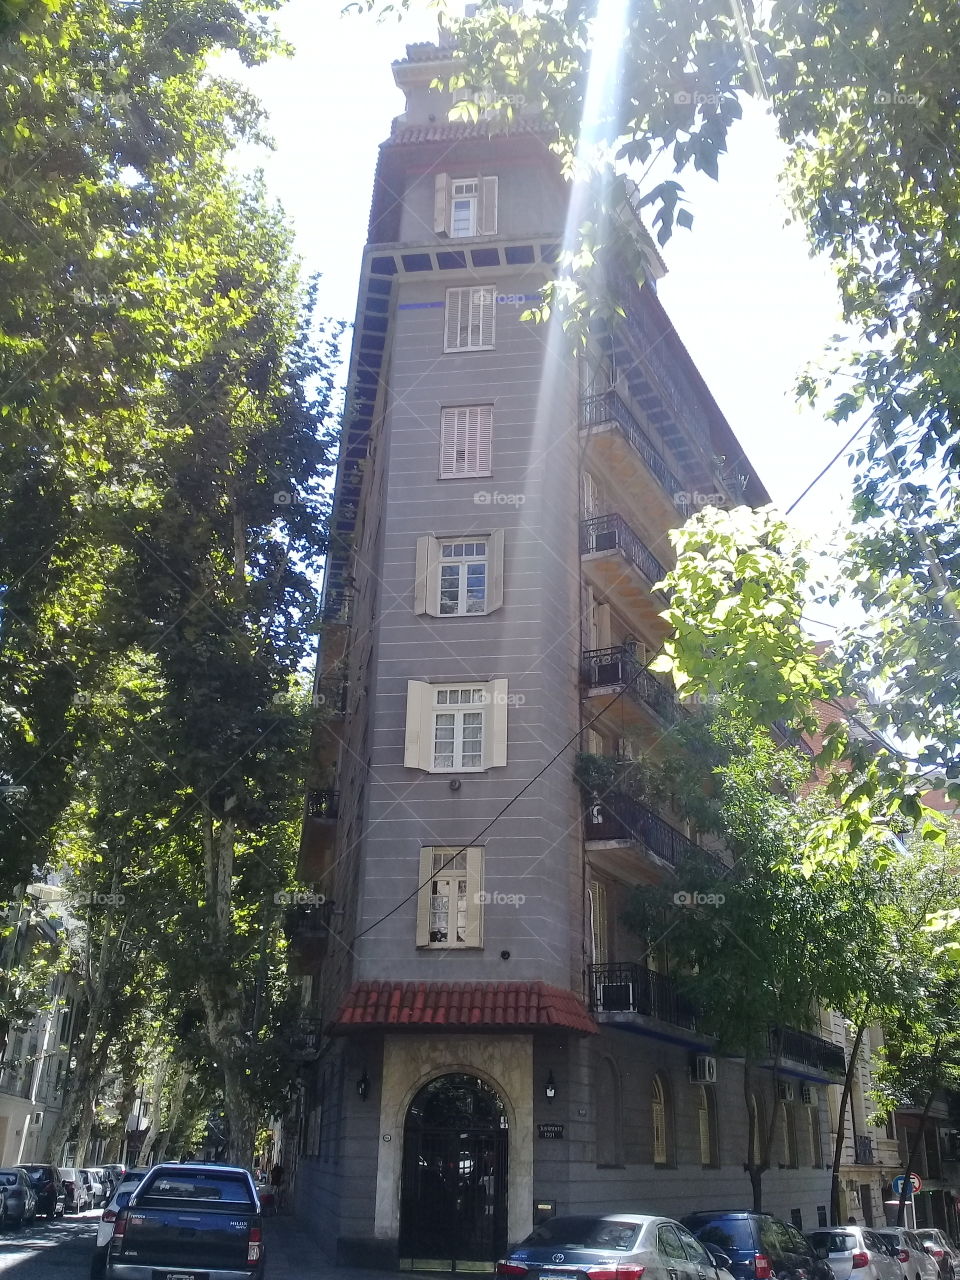 imagen de un antiguo edificio ubicado en una esquina en diagonal sobre dos avenidas urbanas.